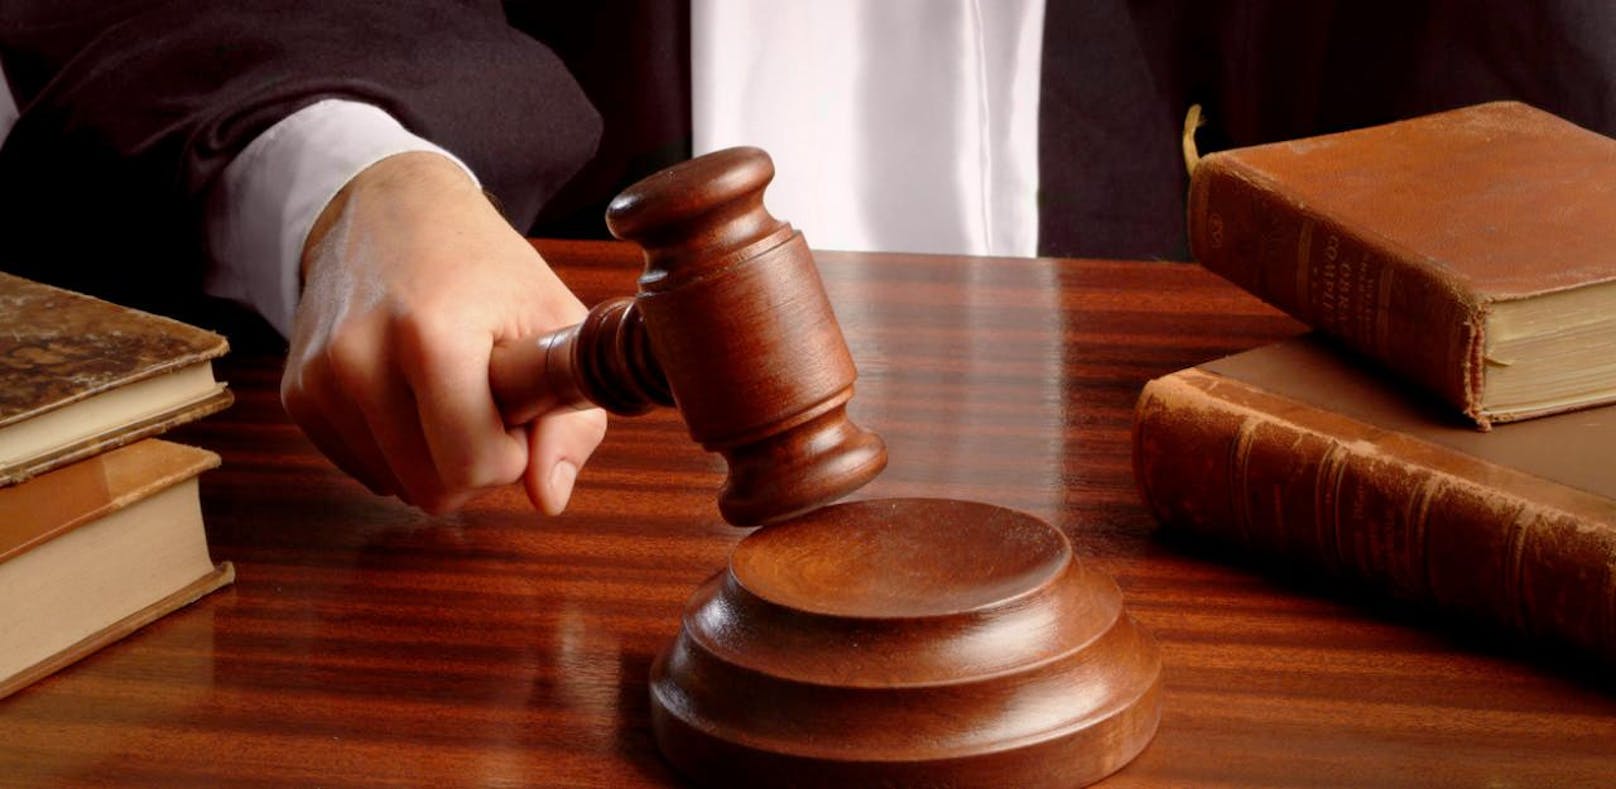 Der Richter verurteilte die 32-Jährige zu zwei Jahren Haft auf Bewährung